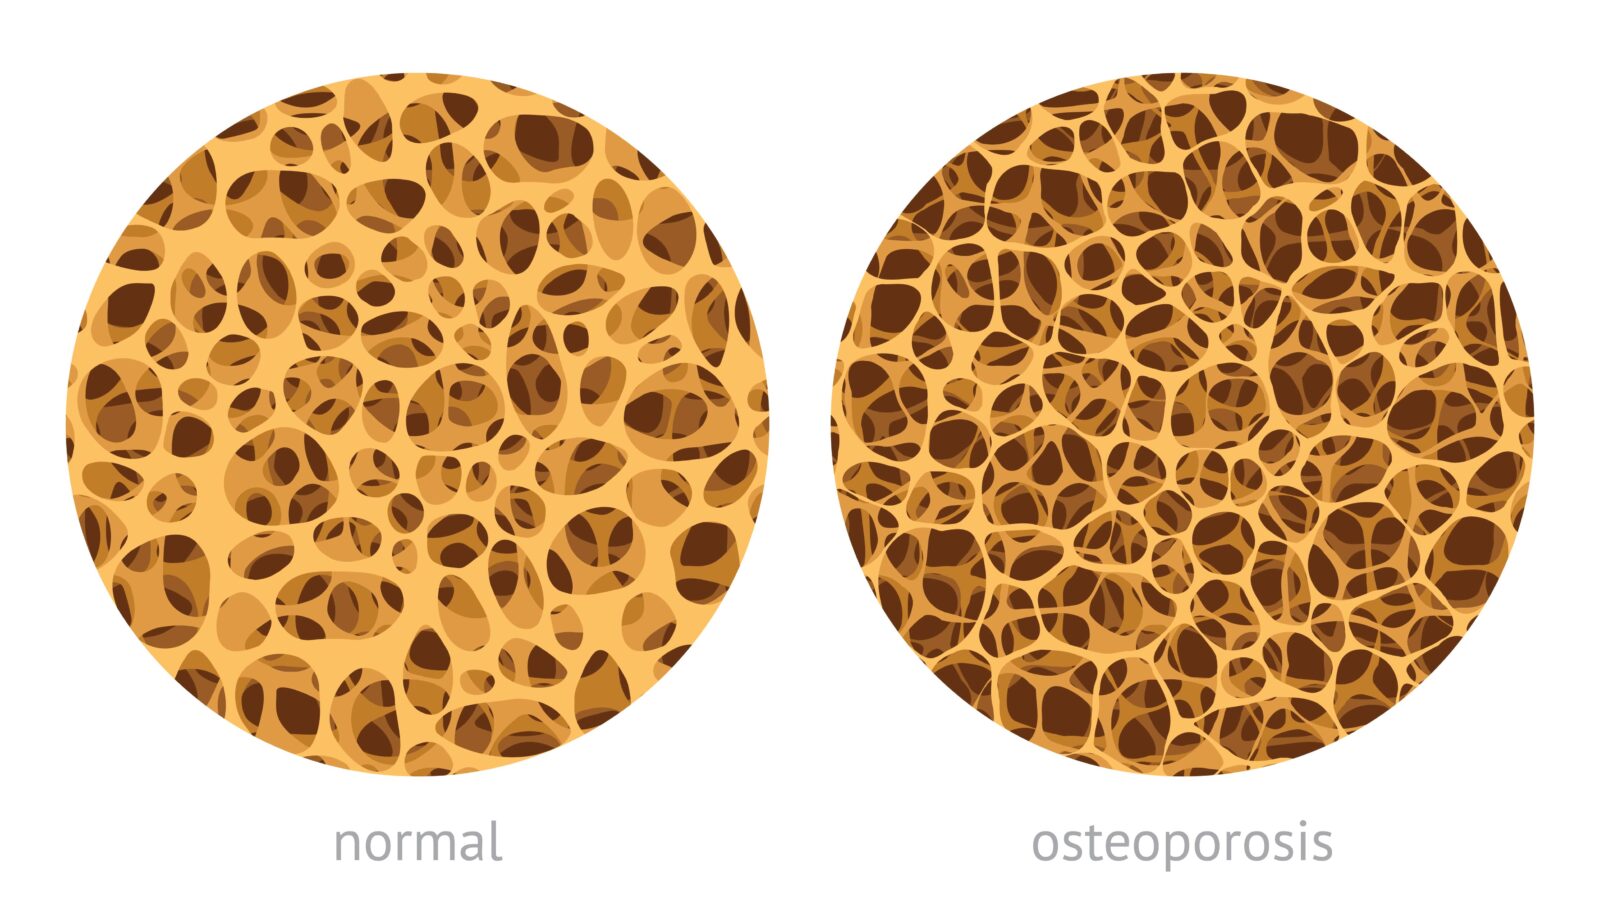 normal bone vs. osteoporosis